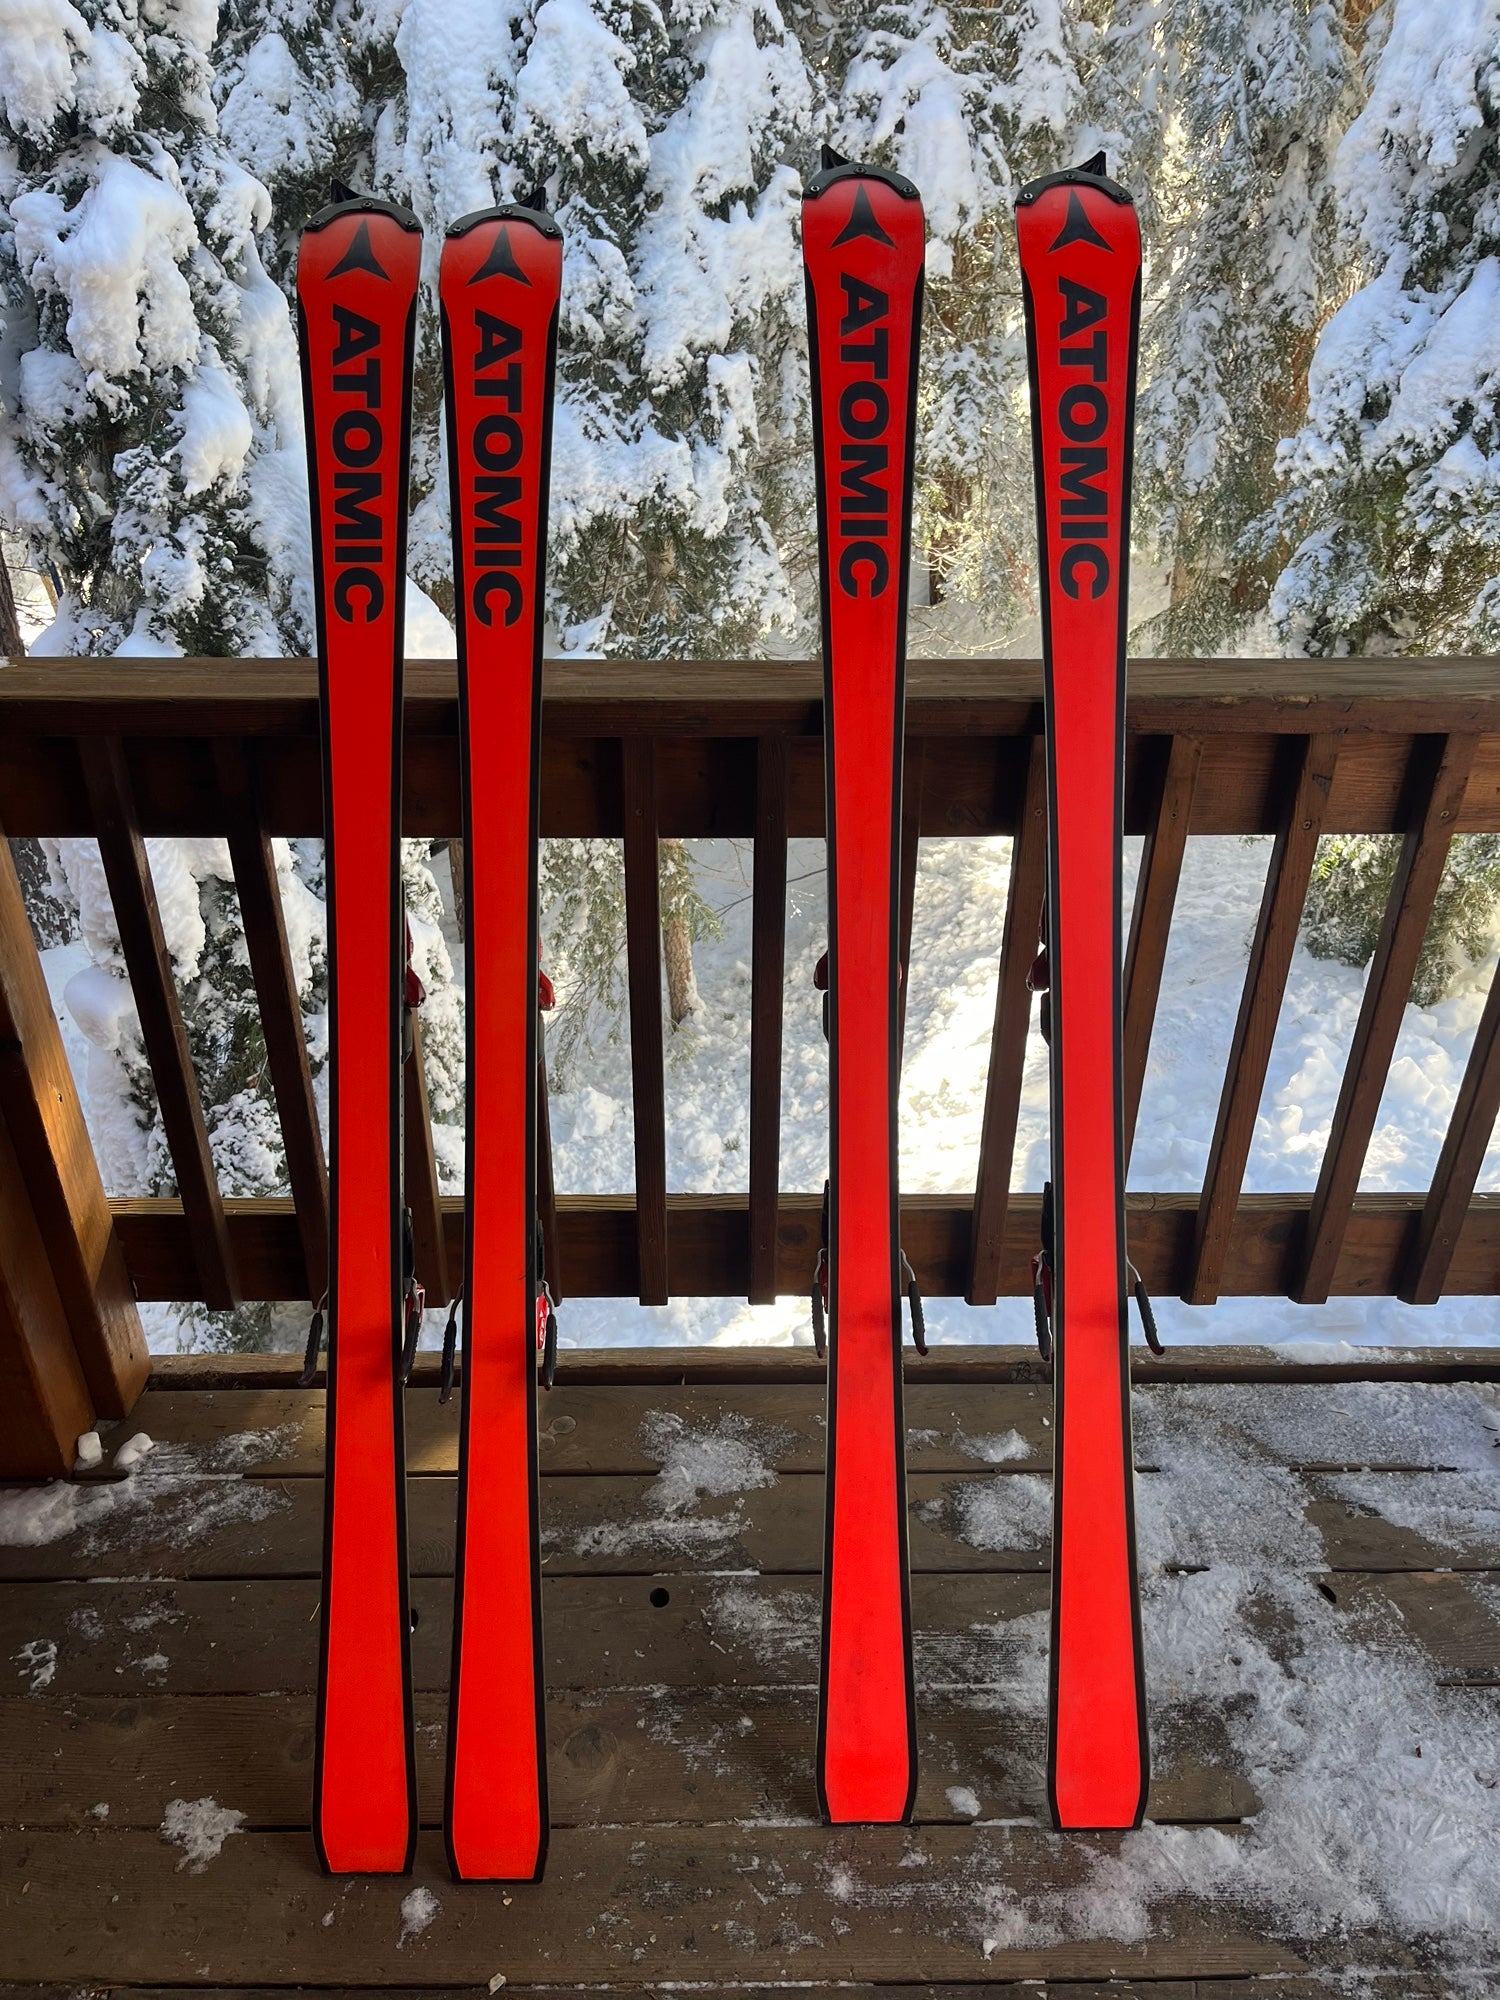 Atomic Redster S9 slalom 152cm jr FIS ski | SidelineSwap